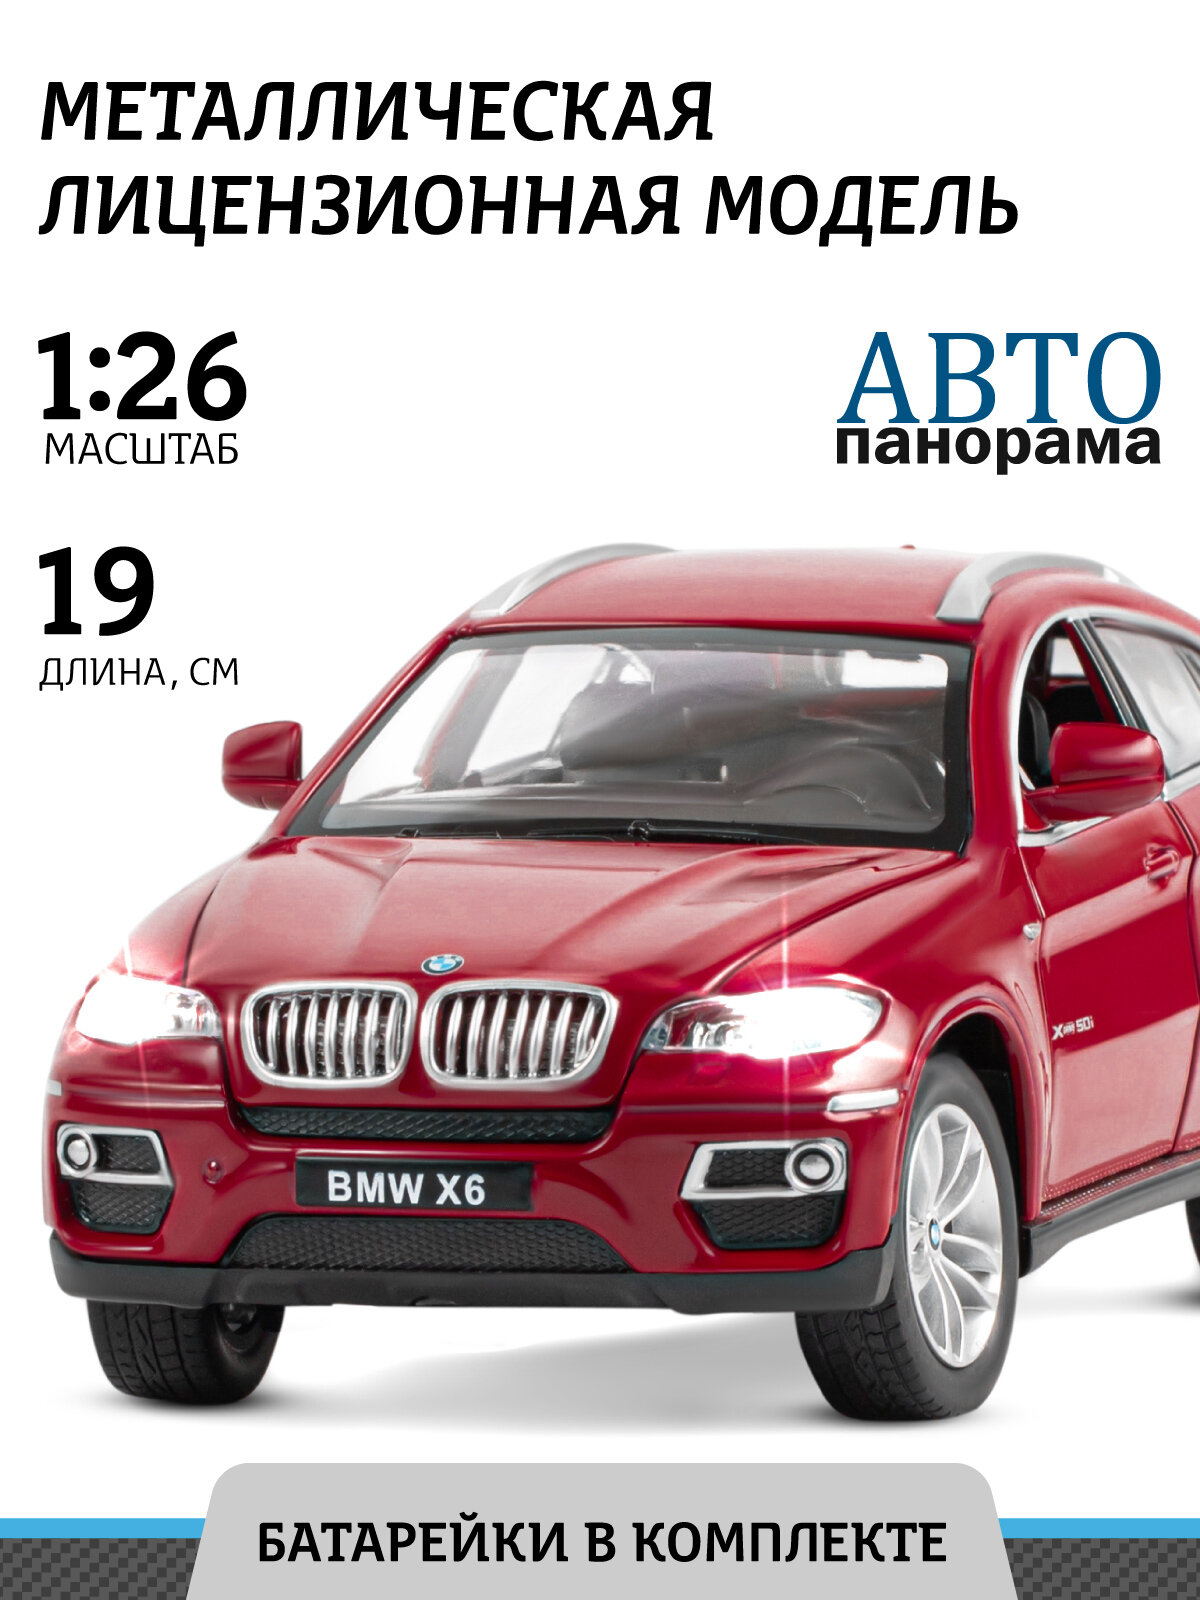 Машина металлическая BMW X6 1:26, открываются двери, капот и багажник, цвет бордовый